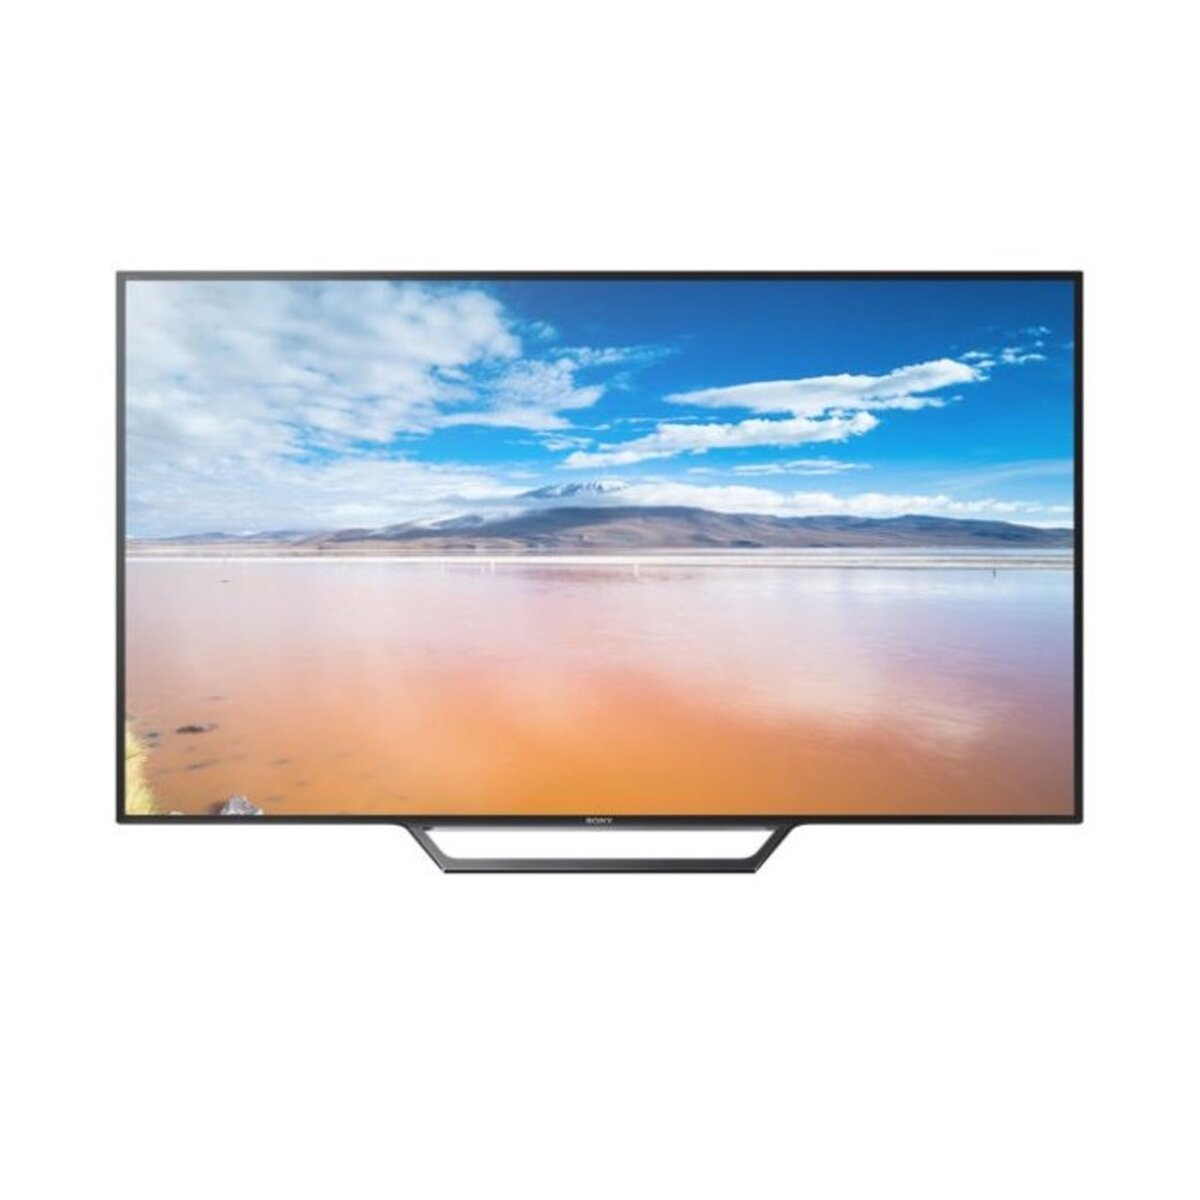 SONY KDL48WD650 TV LED Full HD 121 cm Smart TV